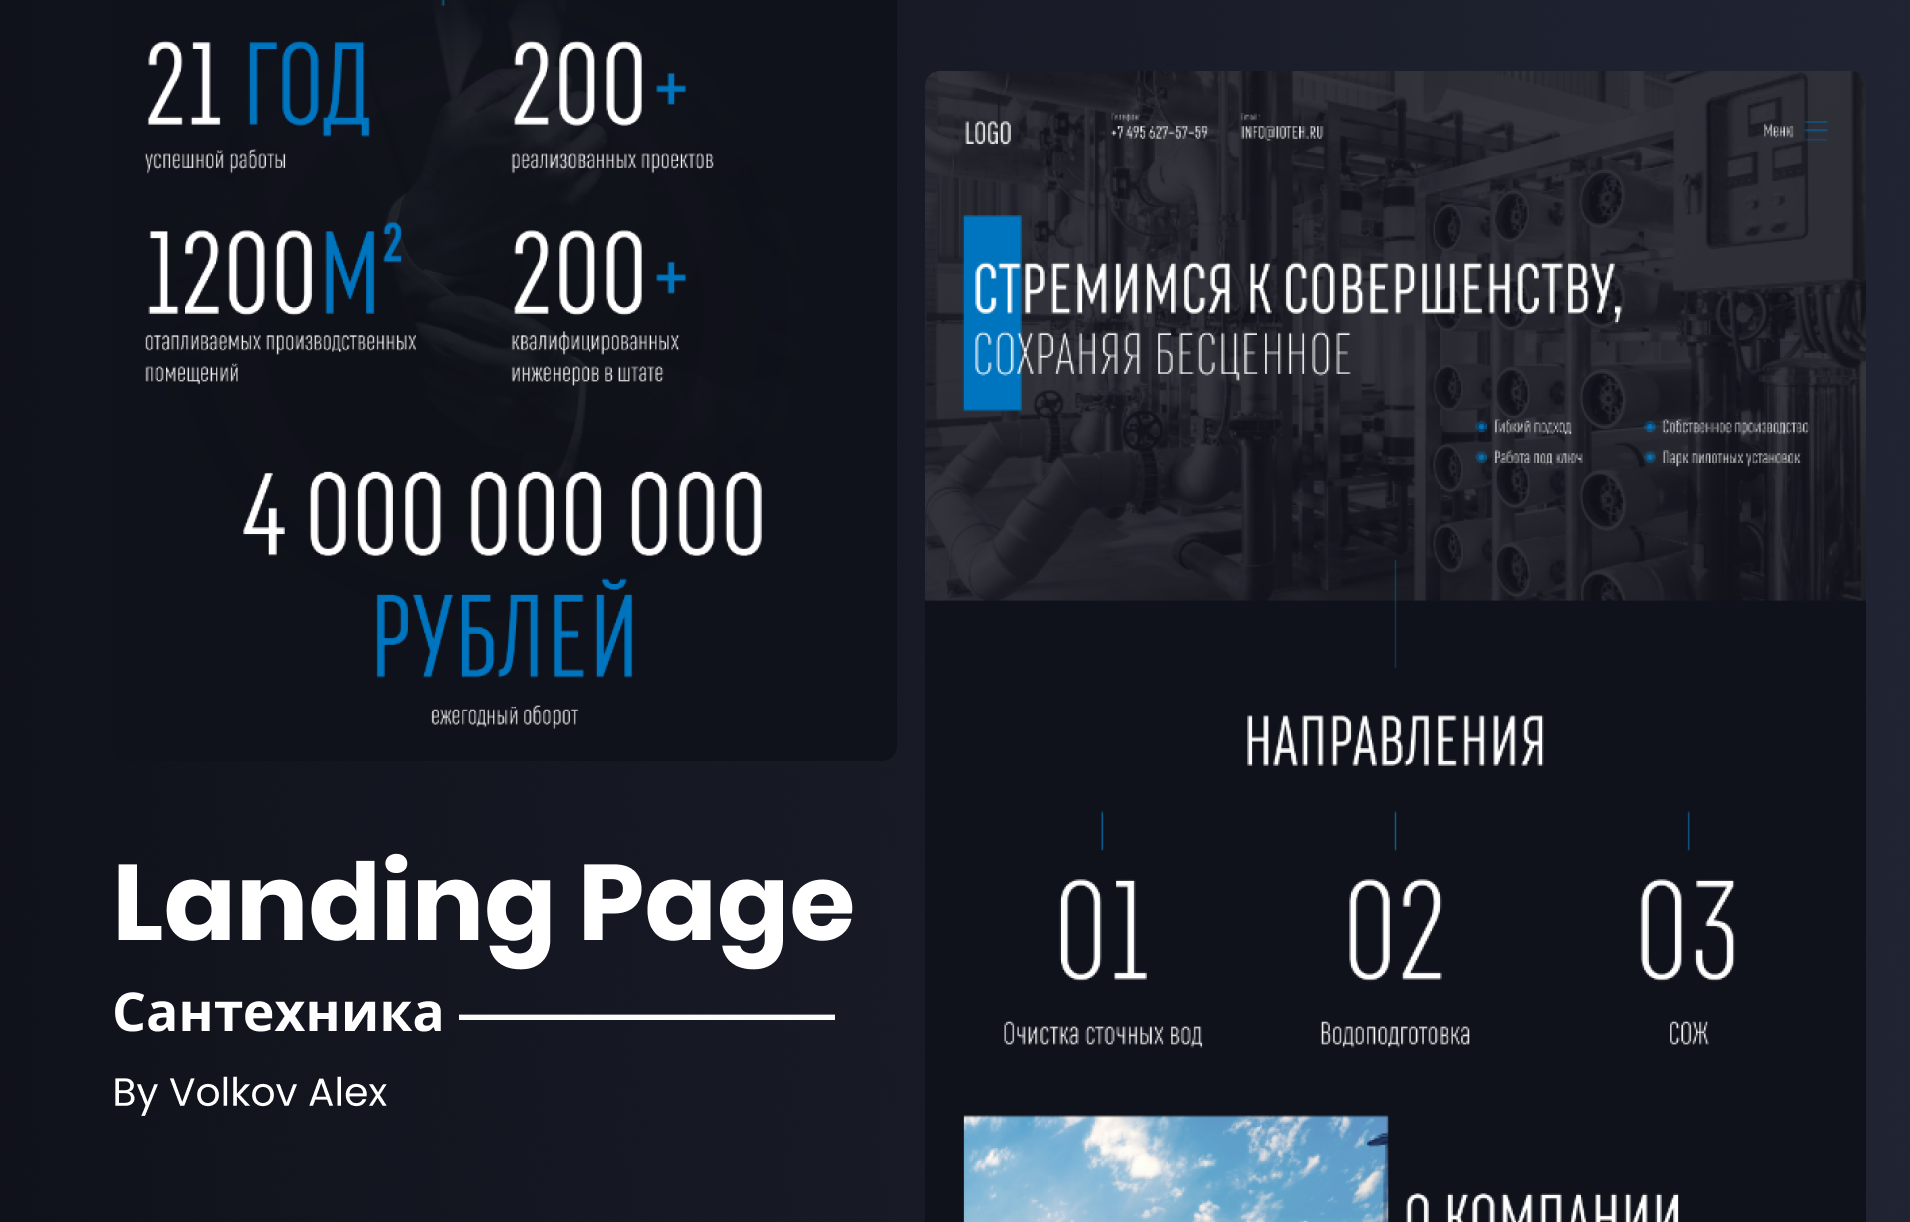 Landing page - Сантехника / Промышленность